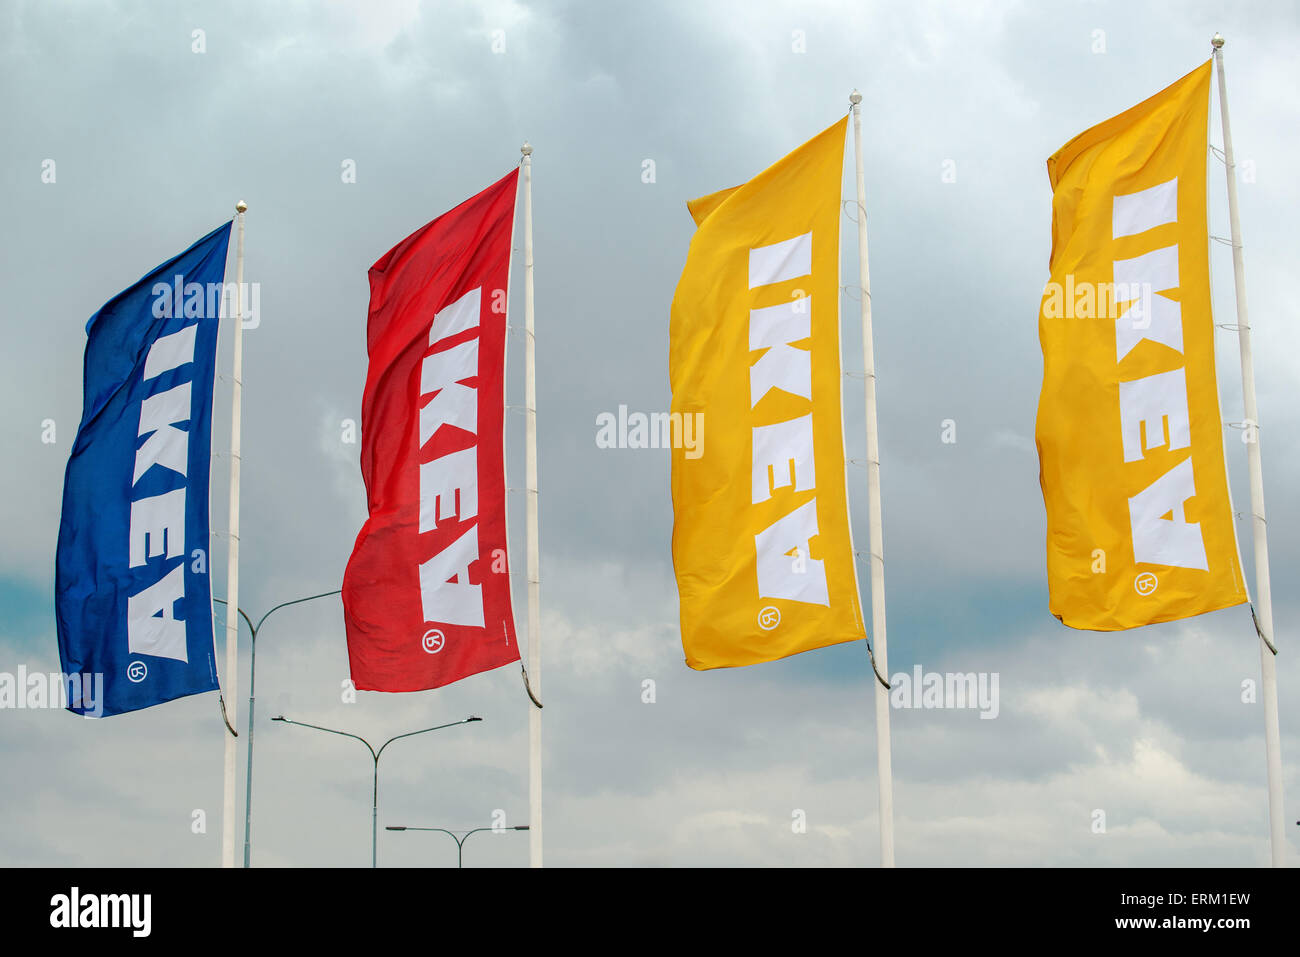 SZEGED, HONGRIE - le 27 mai 2015 : Ikea agitant des banderoles sur le vent. Ikea est célèbre société multinationale qui conçoit et vend des prête-t Banque D'Images